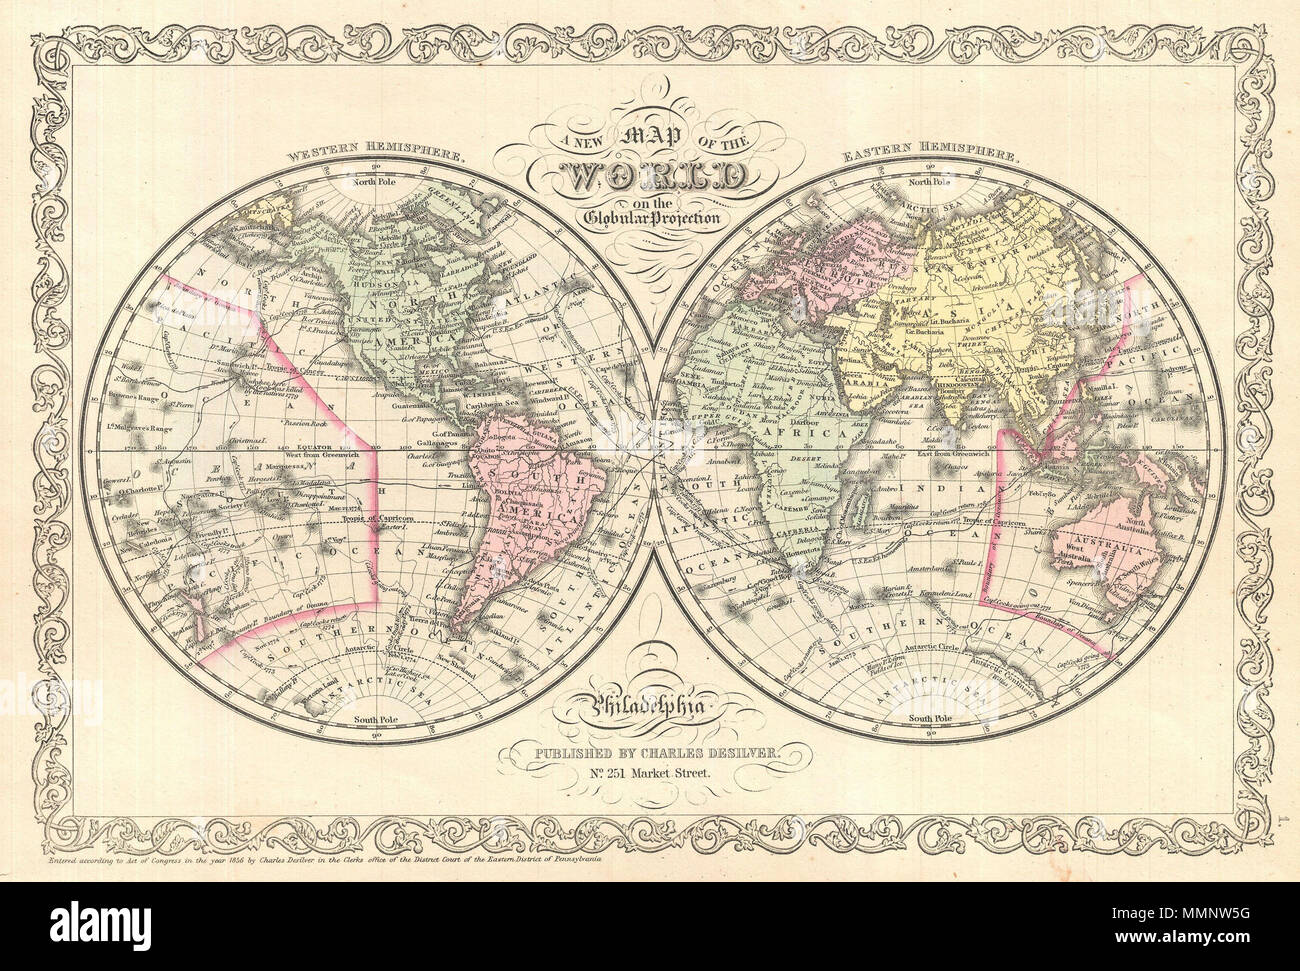 . Inglese: un raffinato esempio di Charles Desilver's 1856 emisfero doppia mappa del mondo. Copre il mondo intero con codifica dei colori secondo i continenti. La mappa mostra le recenti scoperte in Antartide come pure i percorsi dei vari esploratori di spicco tra cui Cook, Gore, e gli Stati Uniti Esplorare la spedizione. Desilver ha iniziato il rilascio di questa mappa nel 1856 quando ha acquisito S. A. Mitchell's copyright e le lastre di stampa. Desilver's cambia a Mitchell's piastre sono in gran parte limitata alla sua aggiunta della griglia confine visto qui. Tuttavia la differenza più significativa tra le due publisher Foto Stock